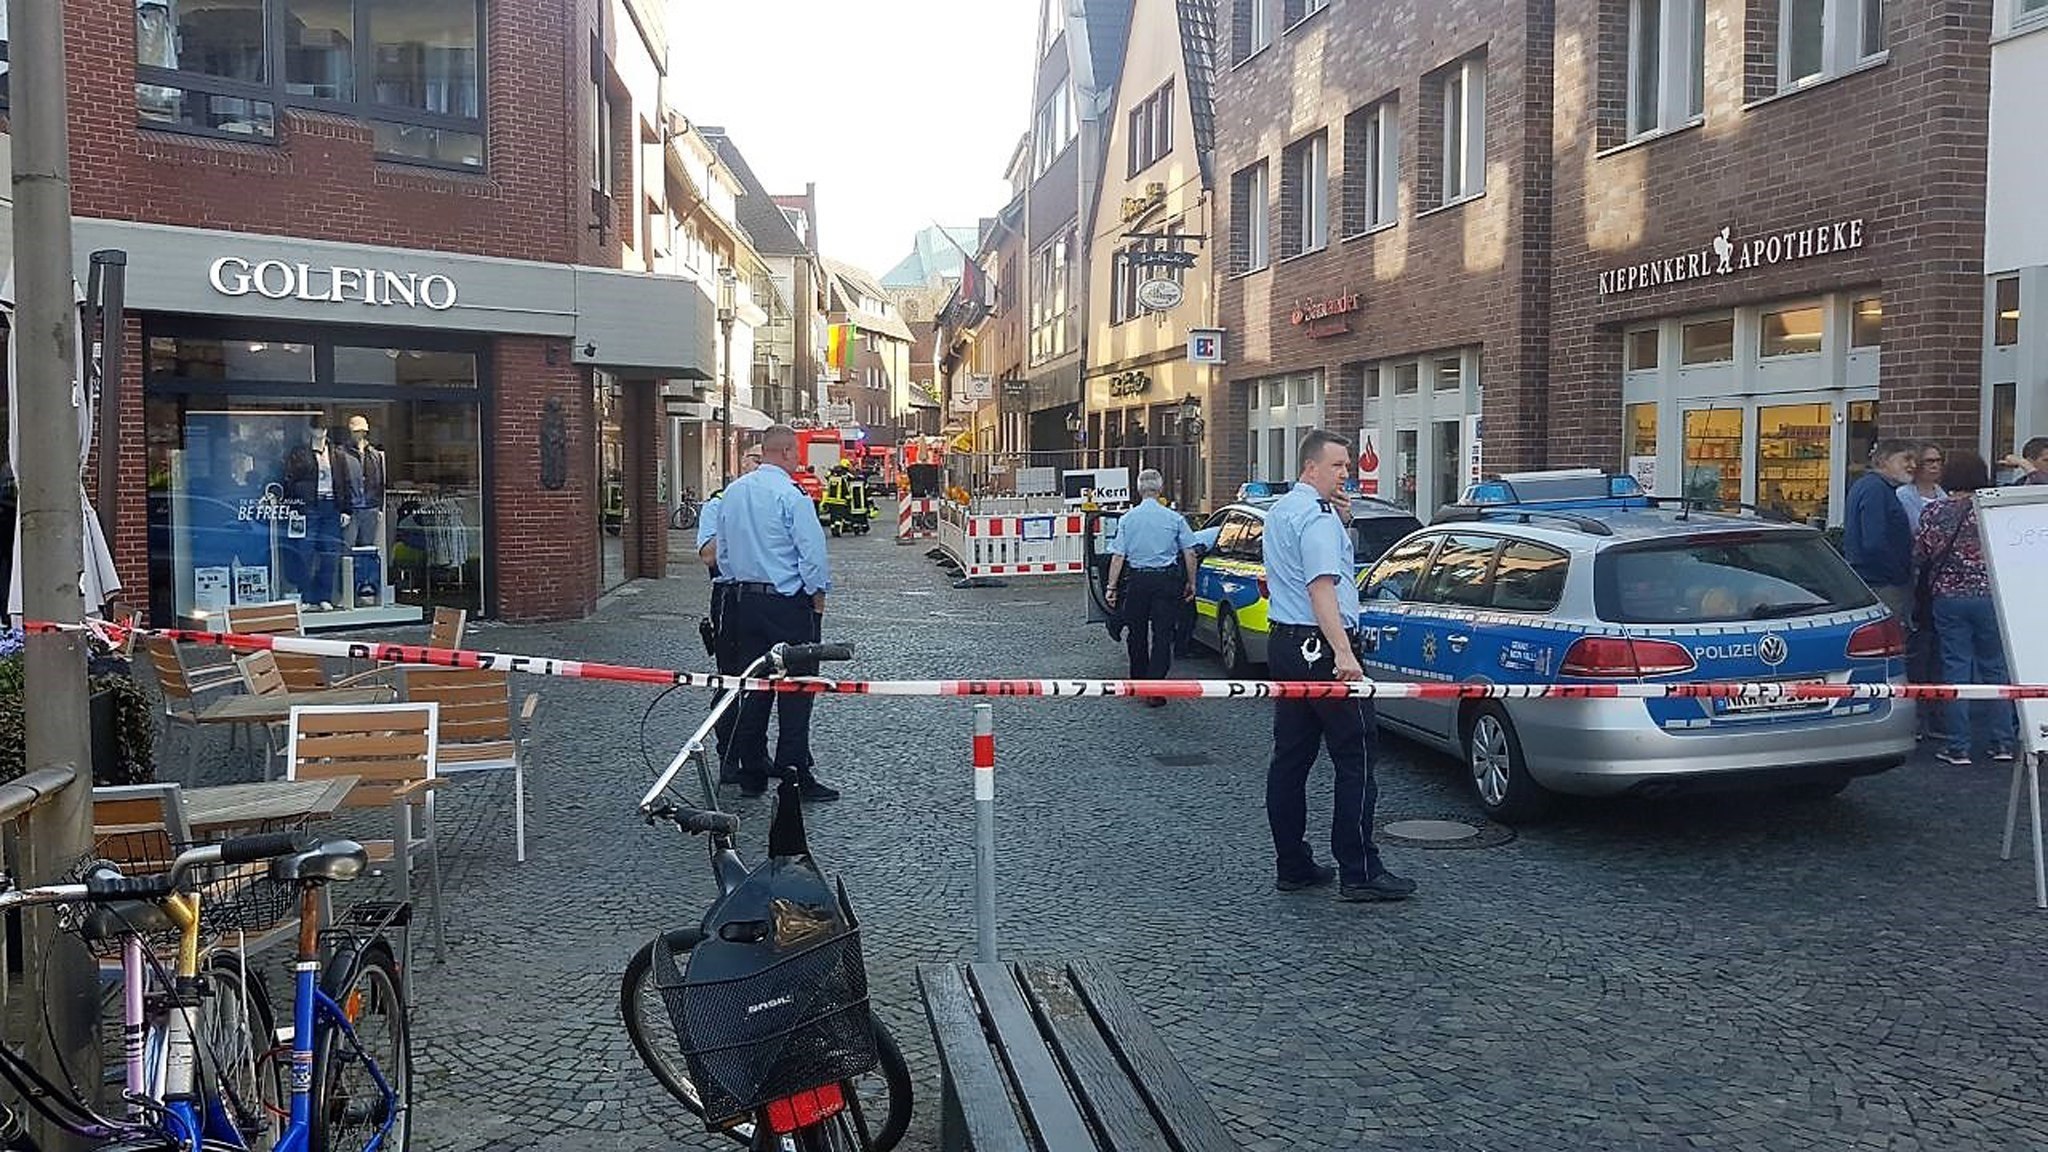 Alemania descarta que atropellamiento masivo en Münster sea atentado terrorista